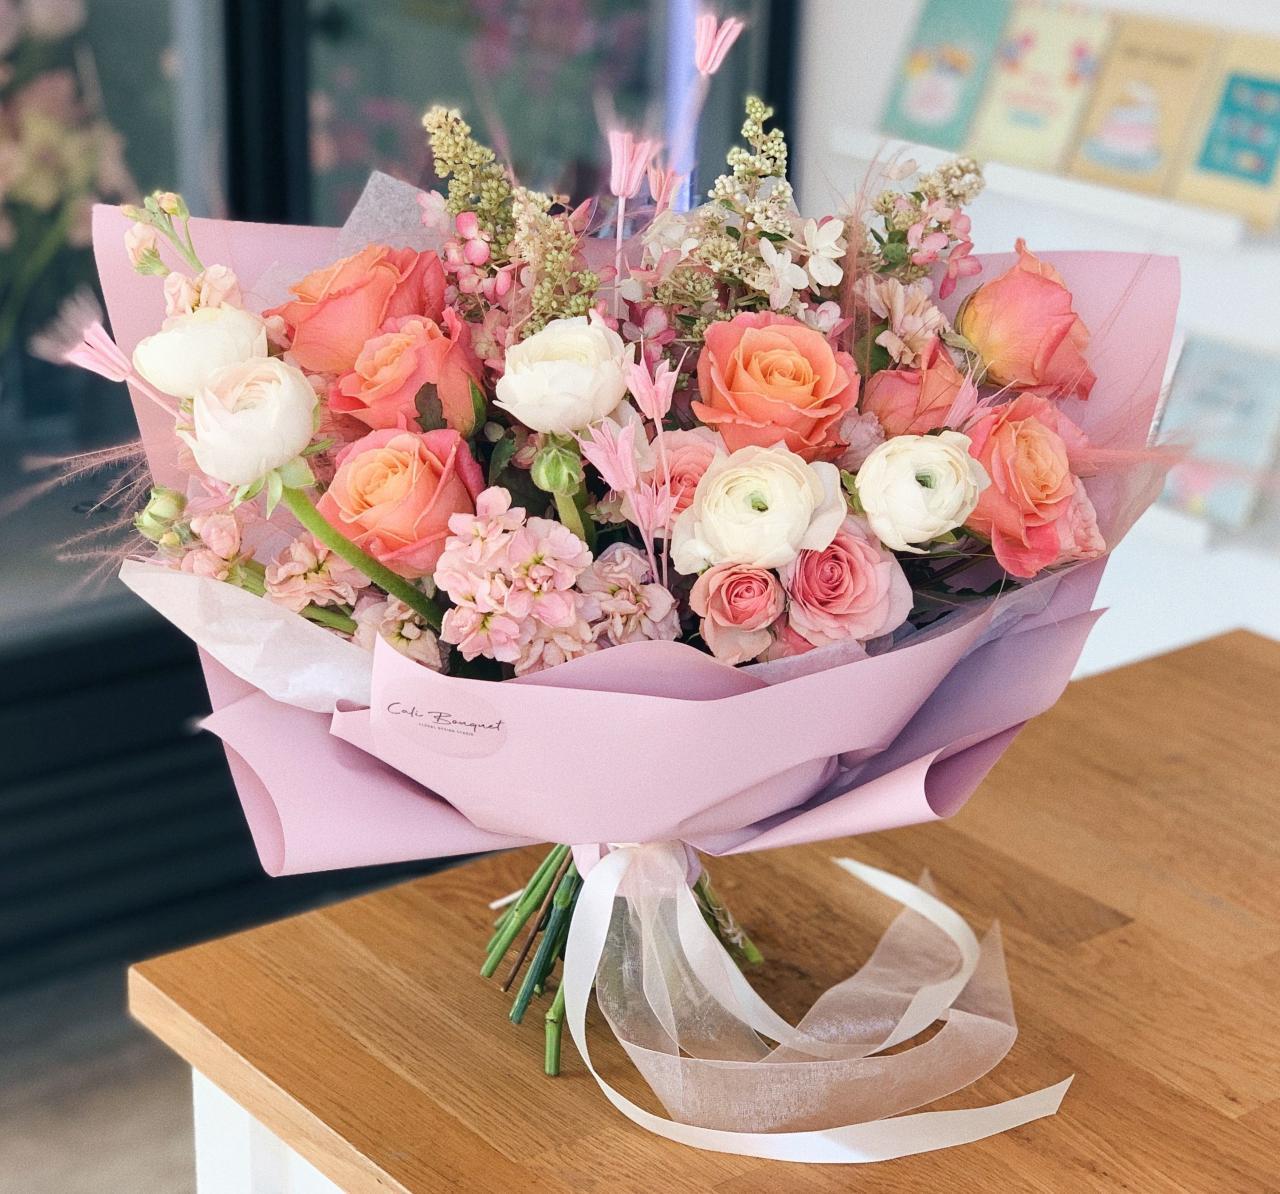 Khám phá cửa hàng hoa tươi ở Hà Nam: Sắm hoa trọn niềm vui